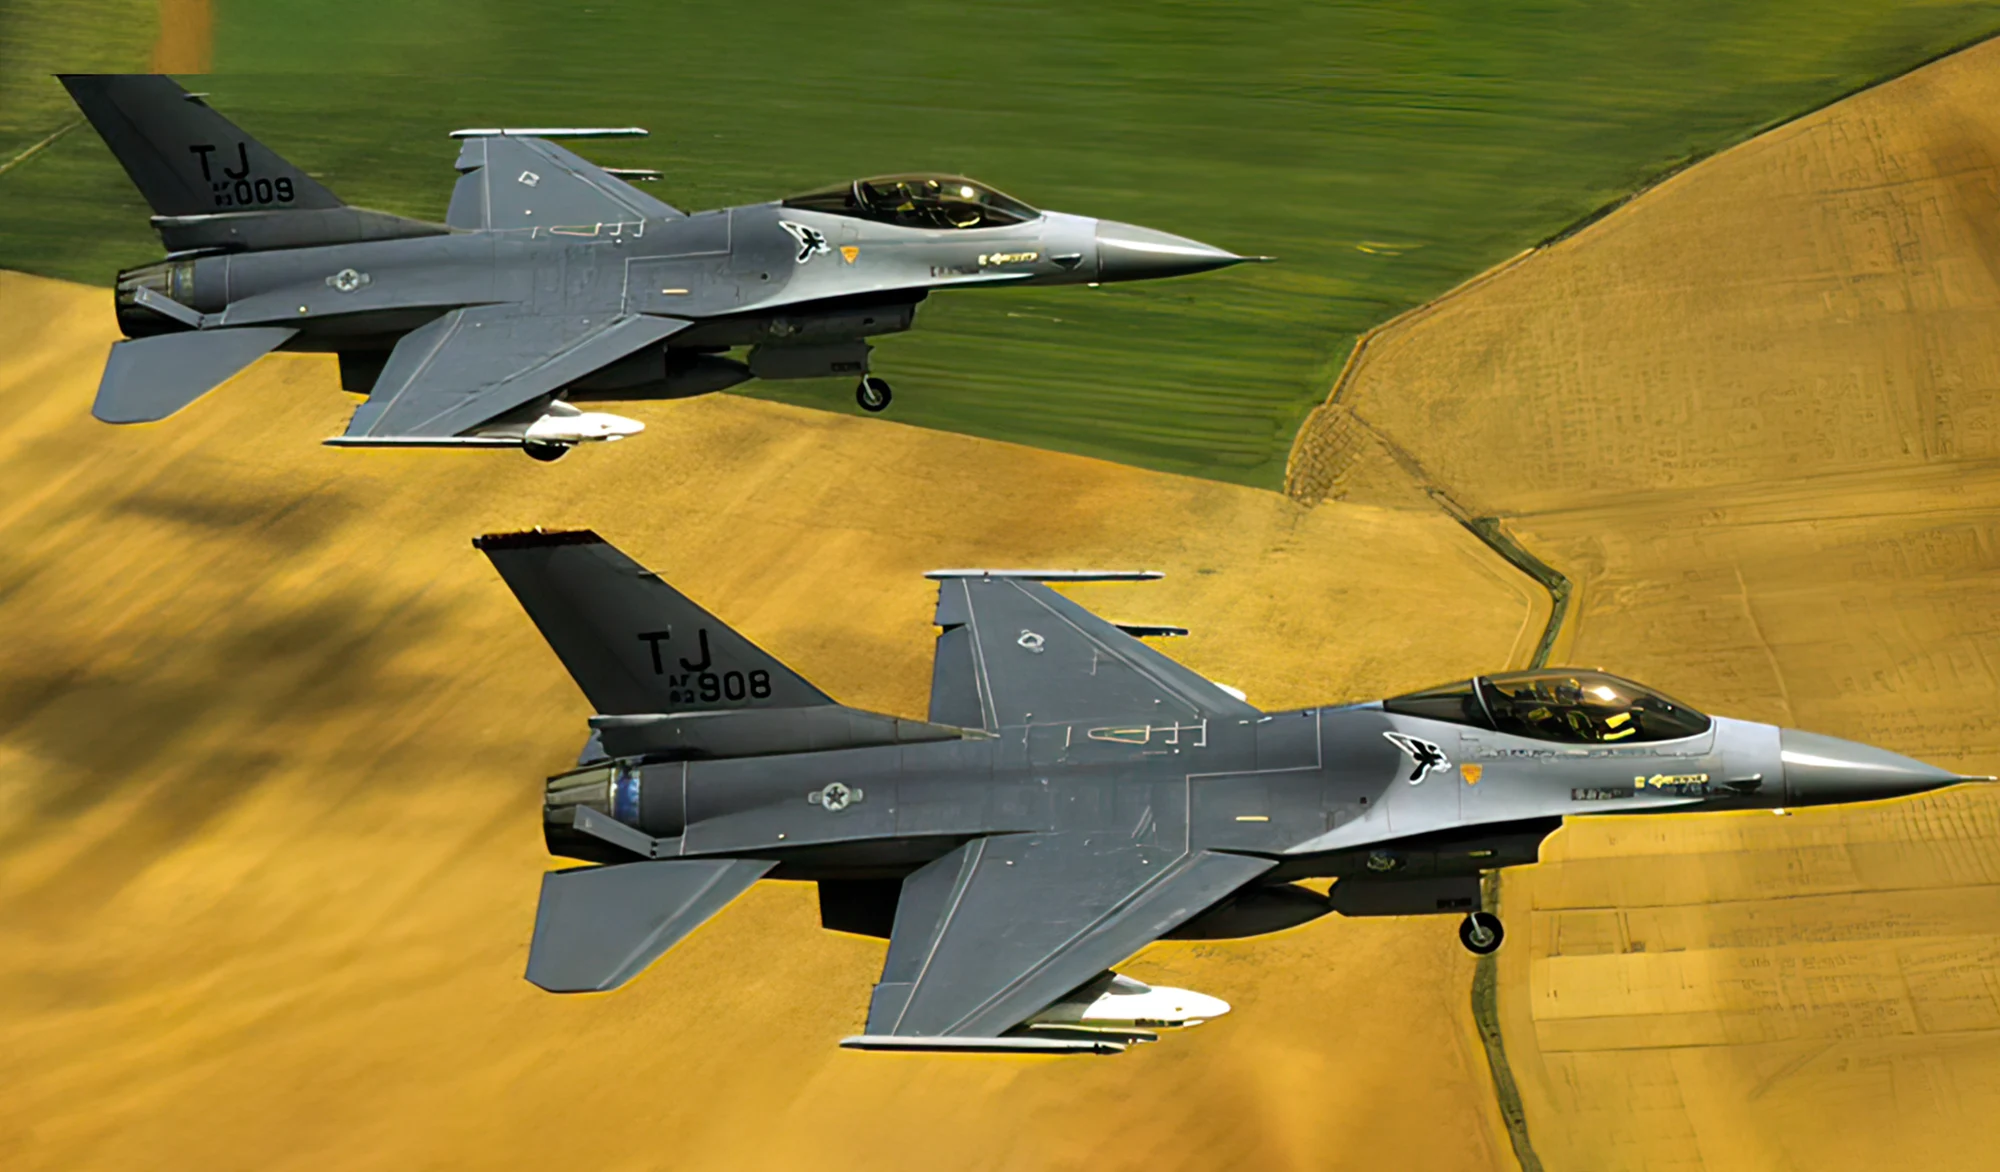 Noruega envía 2 cazas F-16 para entrenar pilotos ucranianos